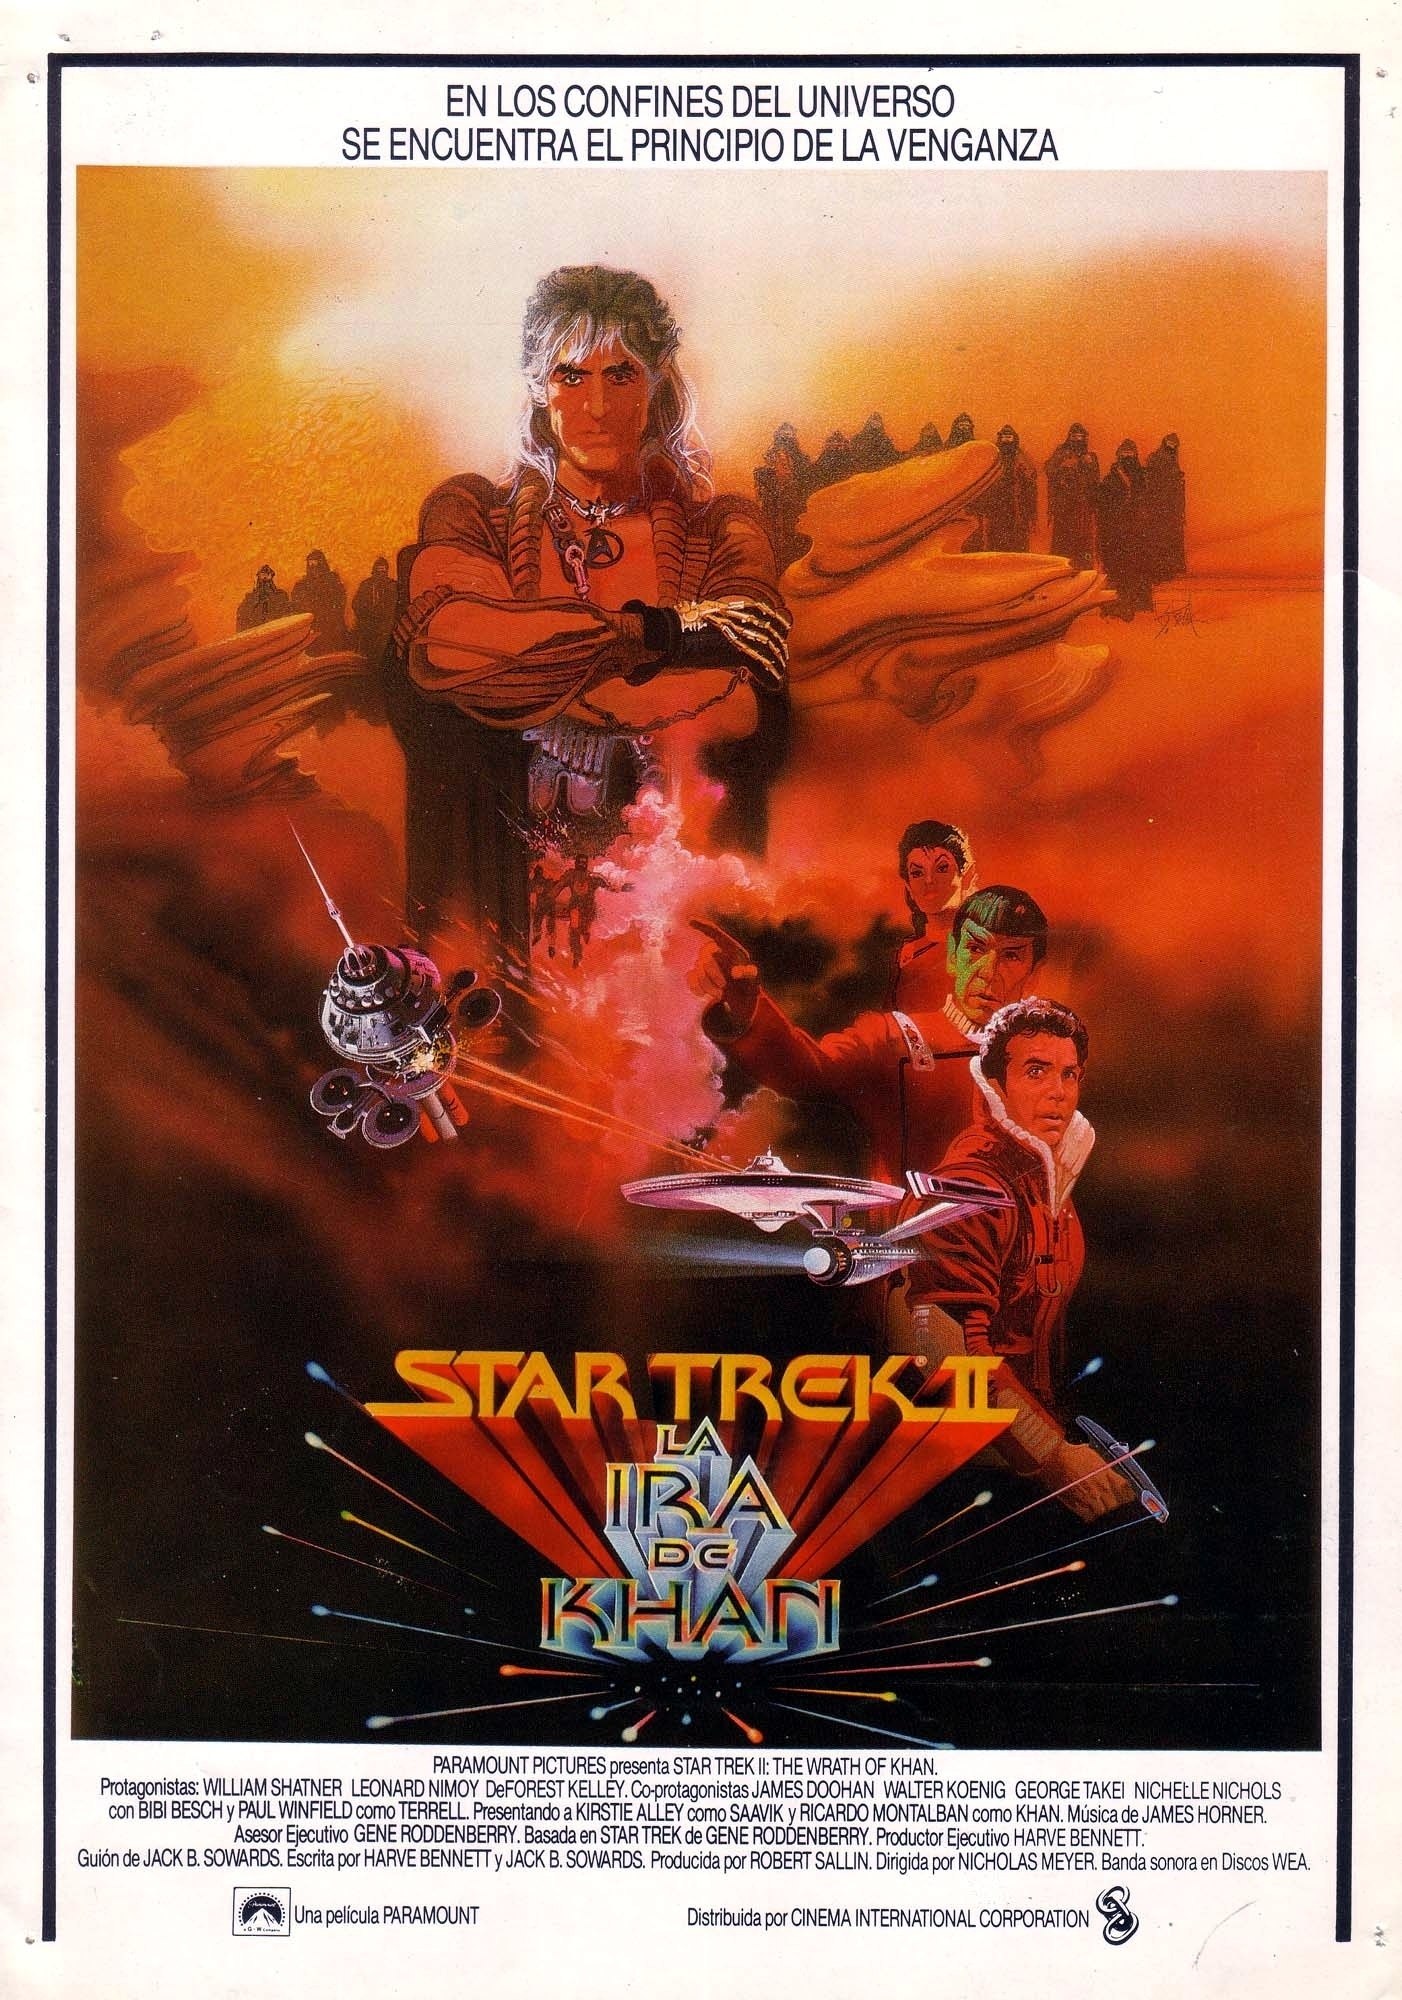 Wrath-Of-Khan-Posters-star-trek-the-movies-13223346-1402-2000.jpg